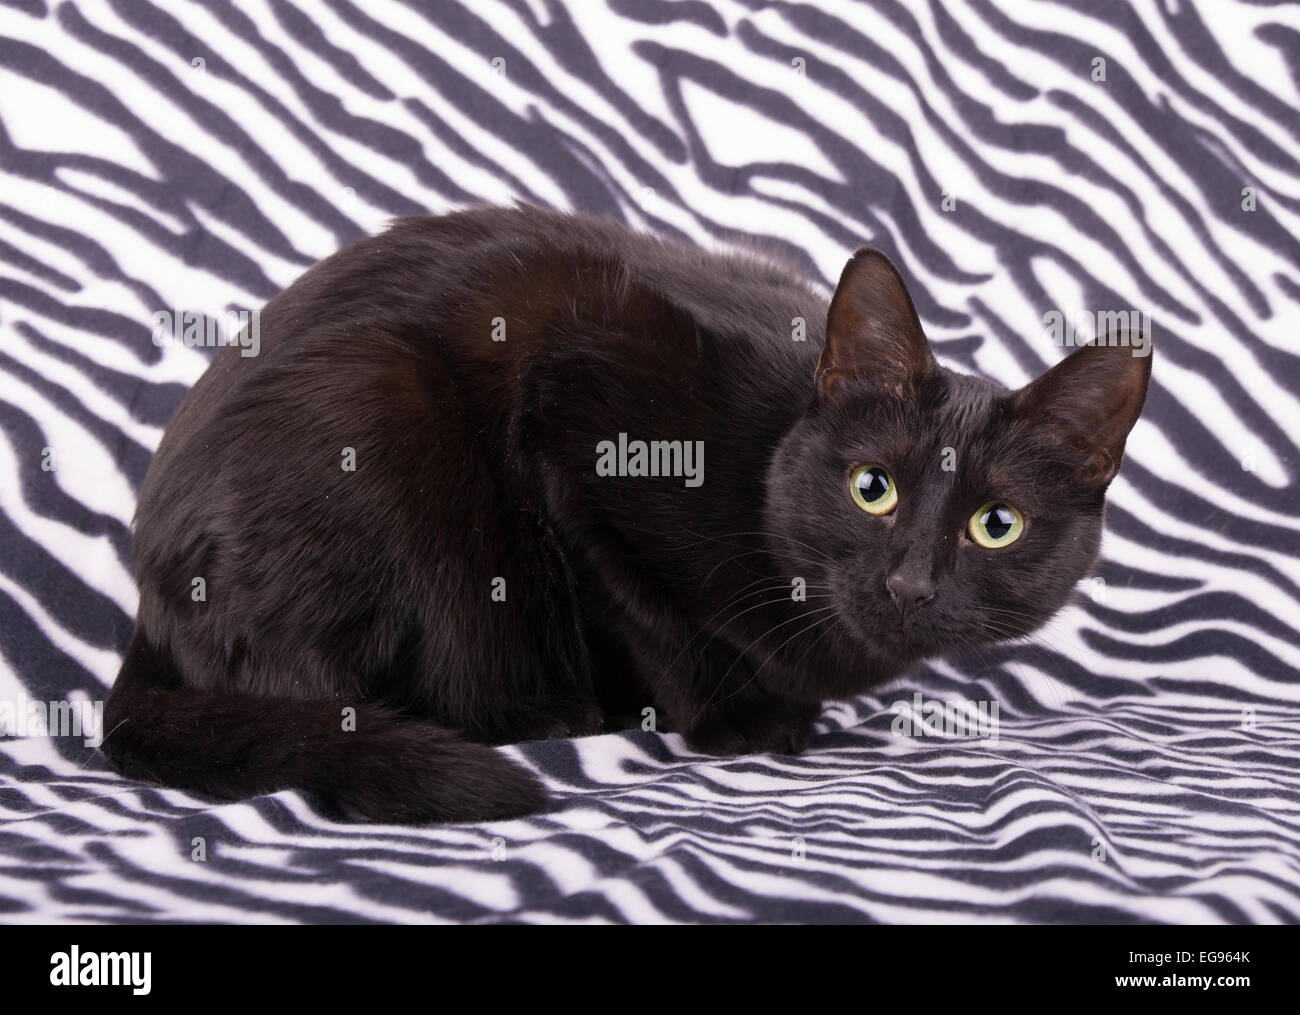 Curieux chat noir reposant contre zebra fond rayé Banque D'Images